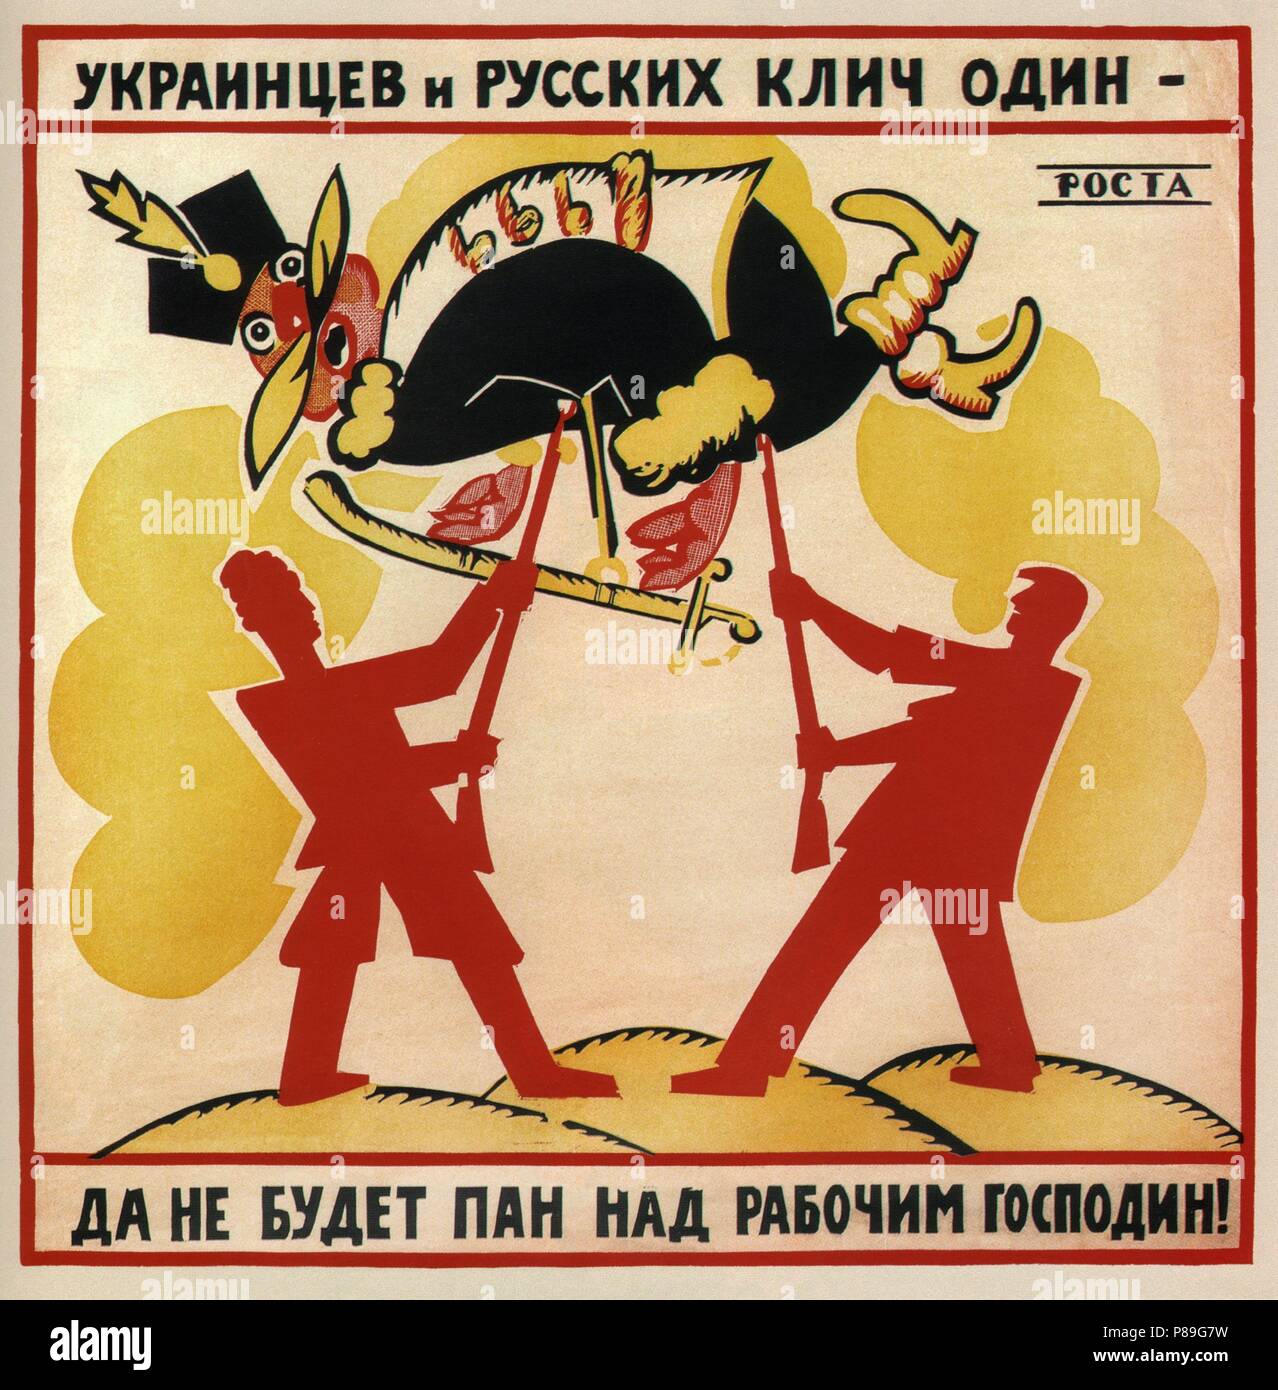 Una chiamata è per gli ucraini e russi sia non lasciare Pan essere un master al di sopra di un lavoratore! (Poster). Museo: Russo Biblioteca Statale di Mosca. Foto Stock